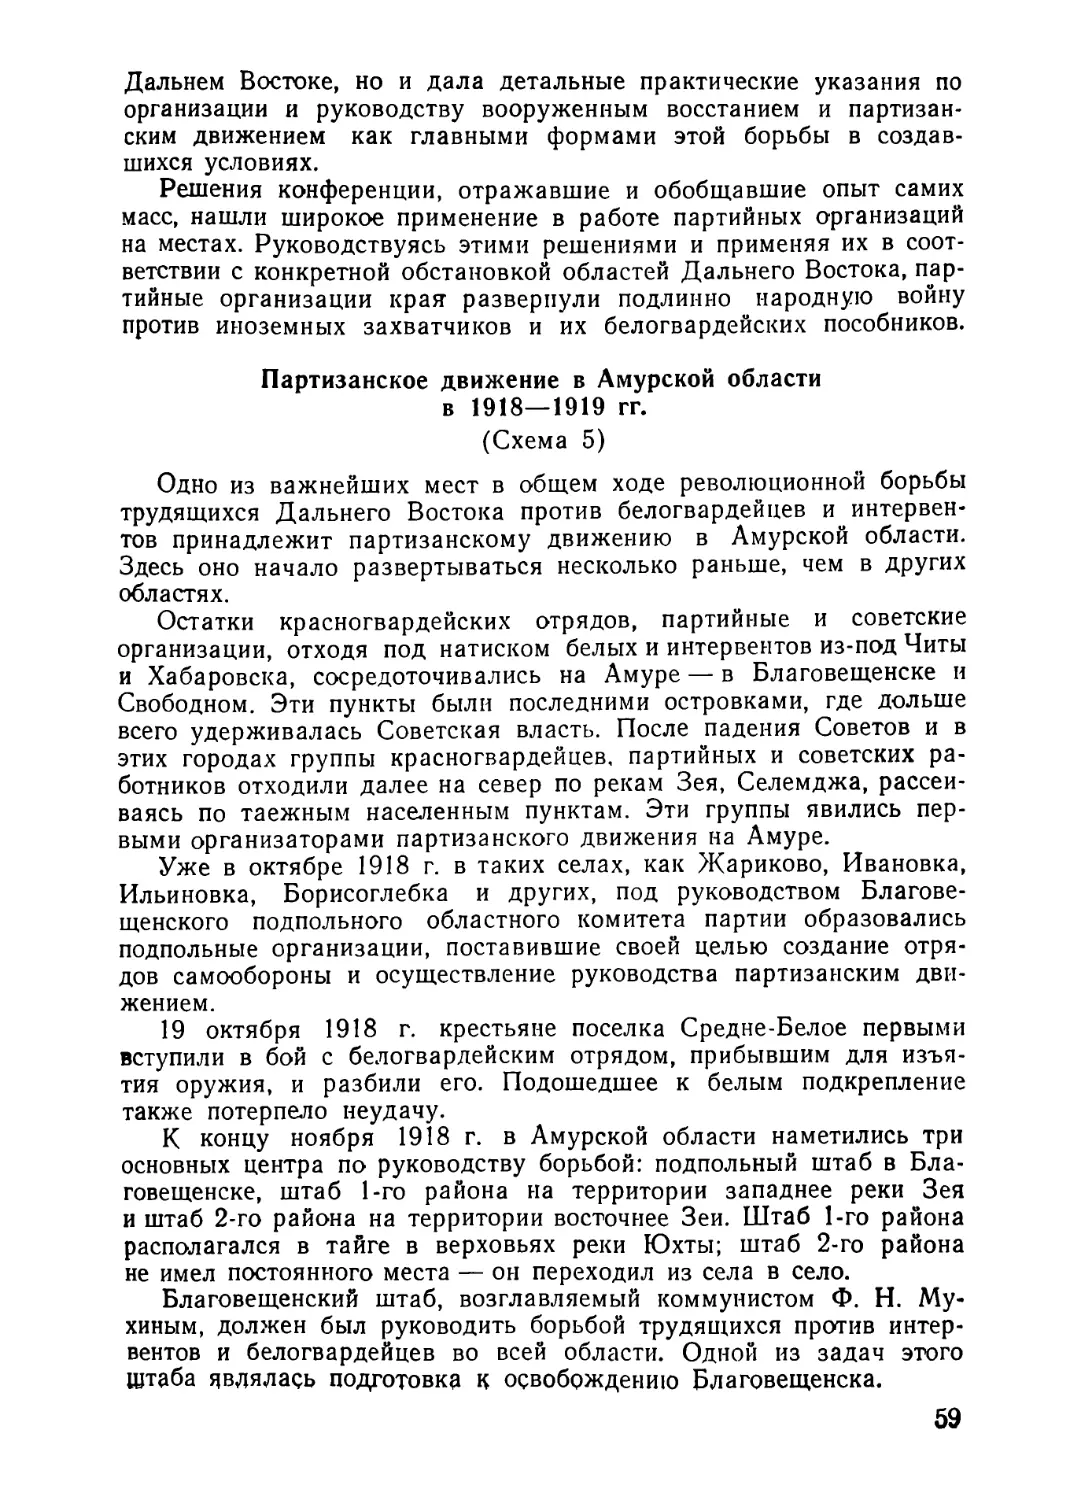 Партизанское движение в Амурской области в 1918—1919 гг.